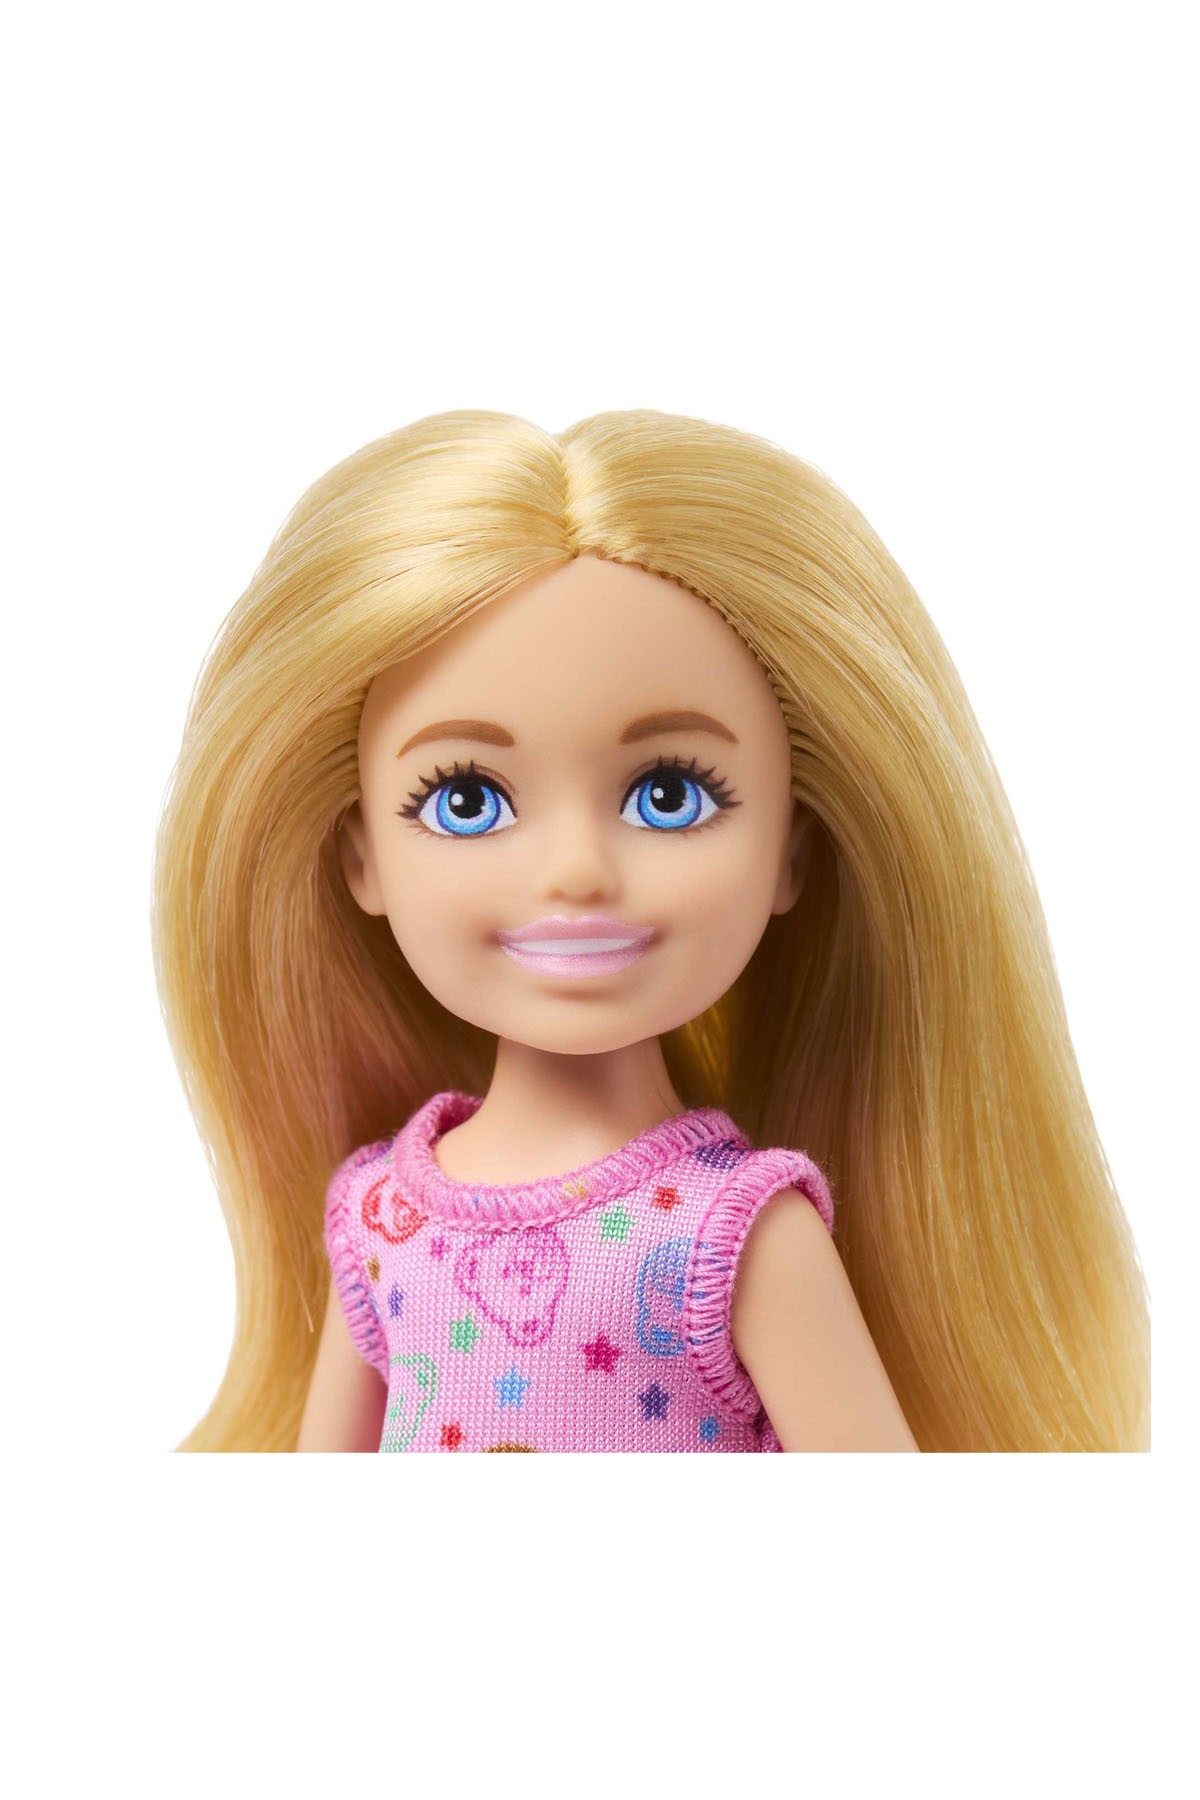 Barbie Chelsea Oyuncak Dükkanı HNY59